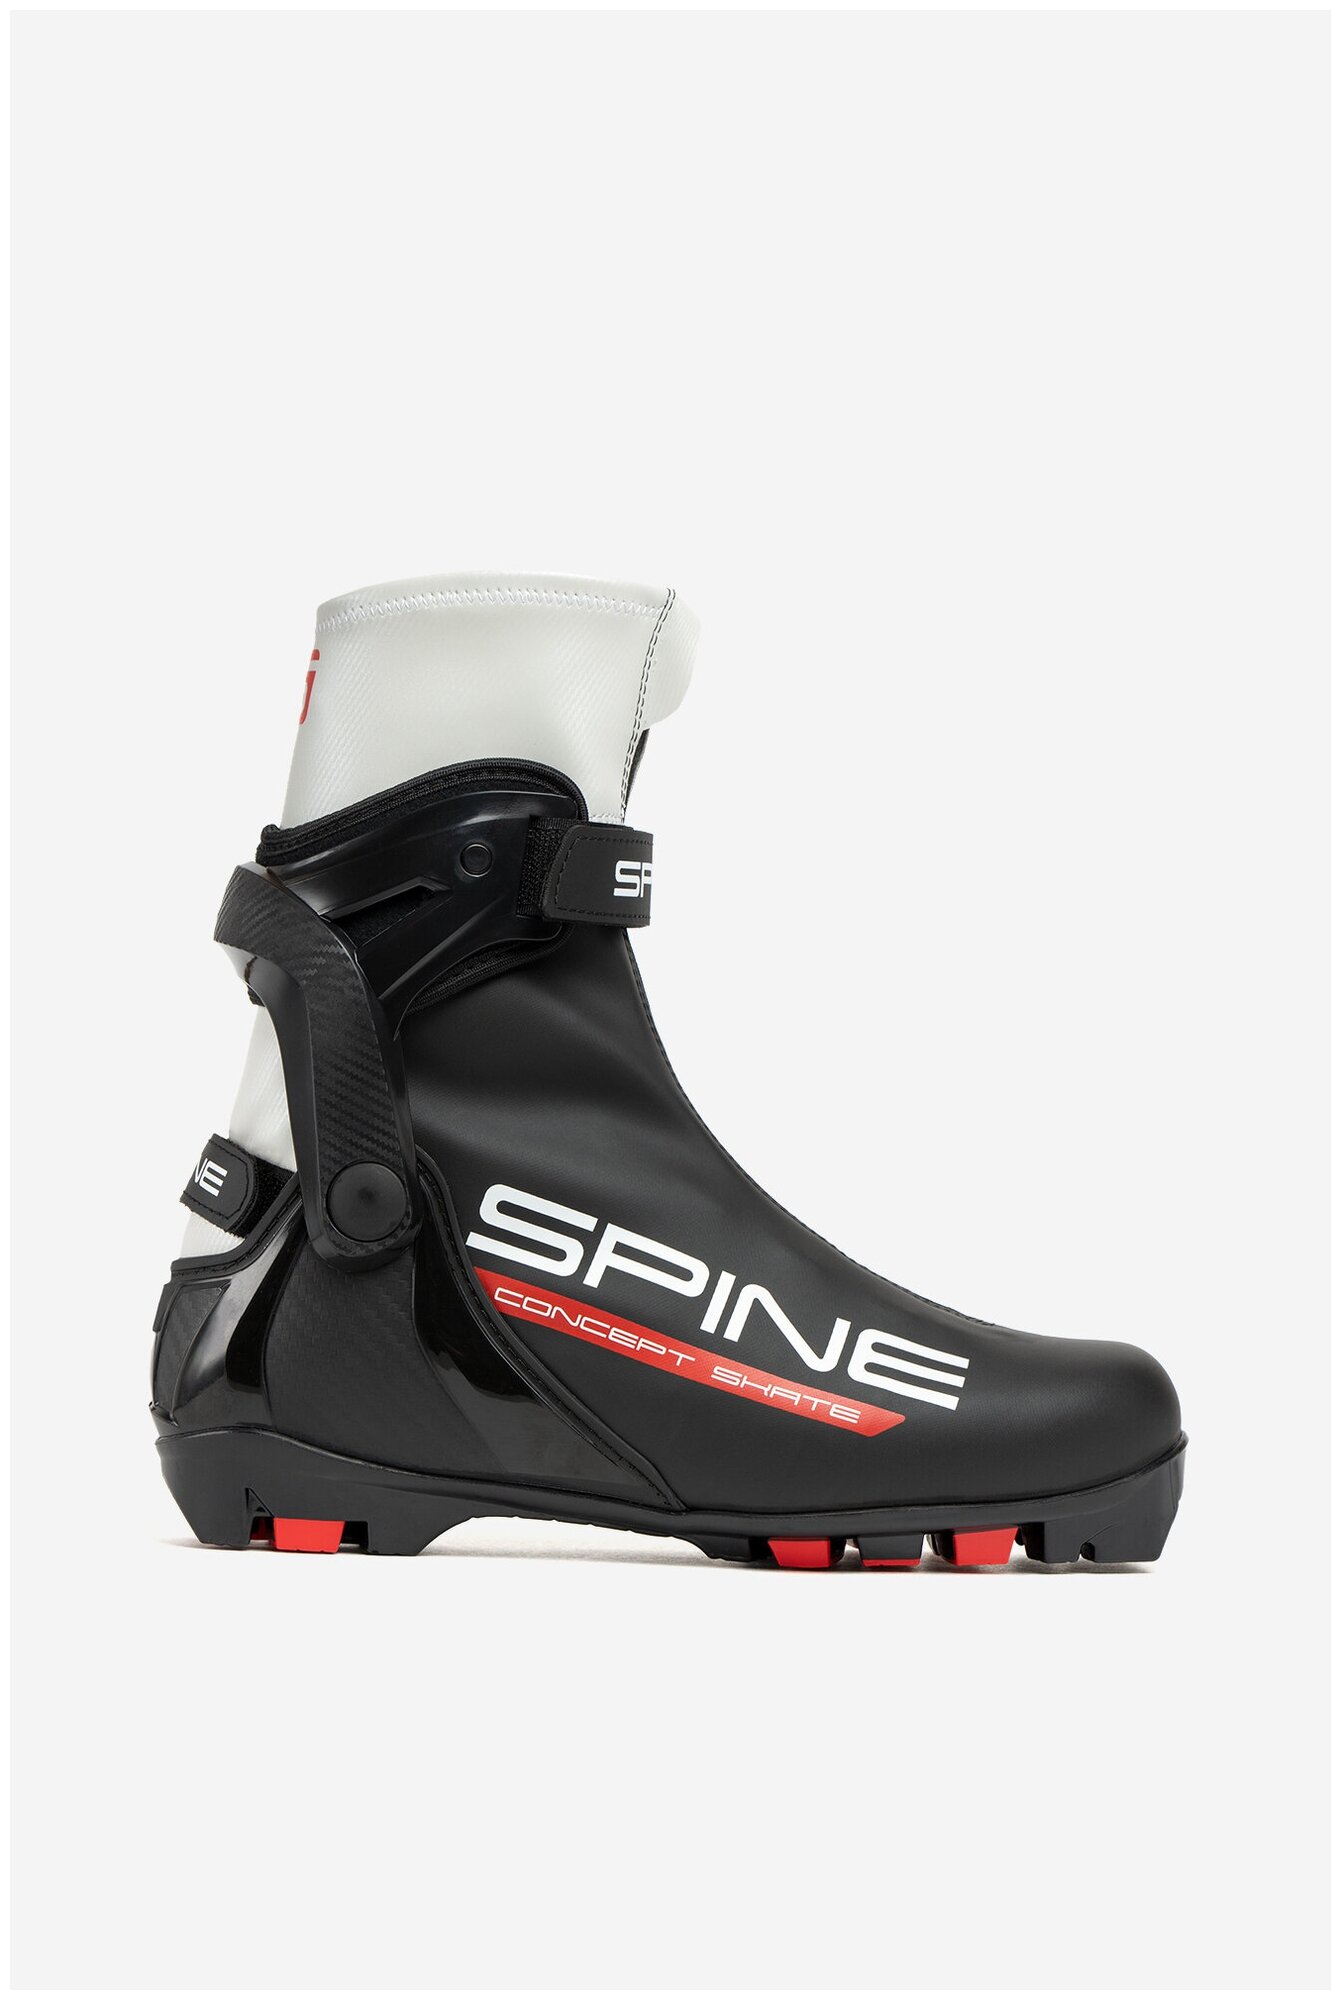 Лыжные ботинки Spine Concept Skate 296-22 NNN (р.41)